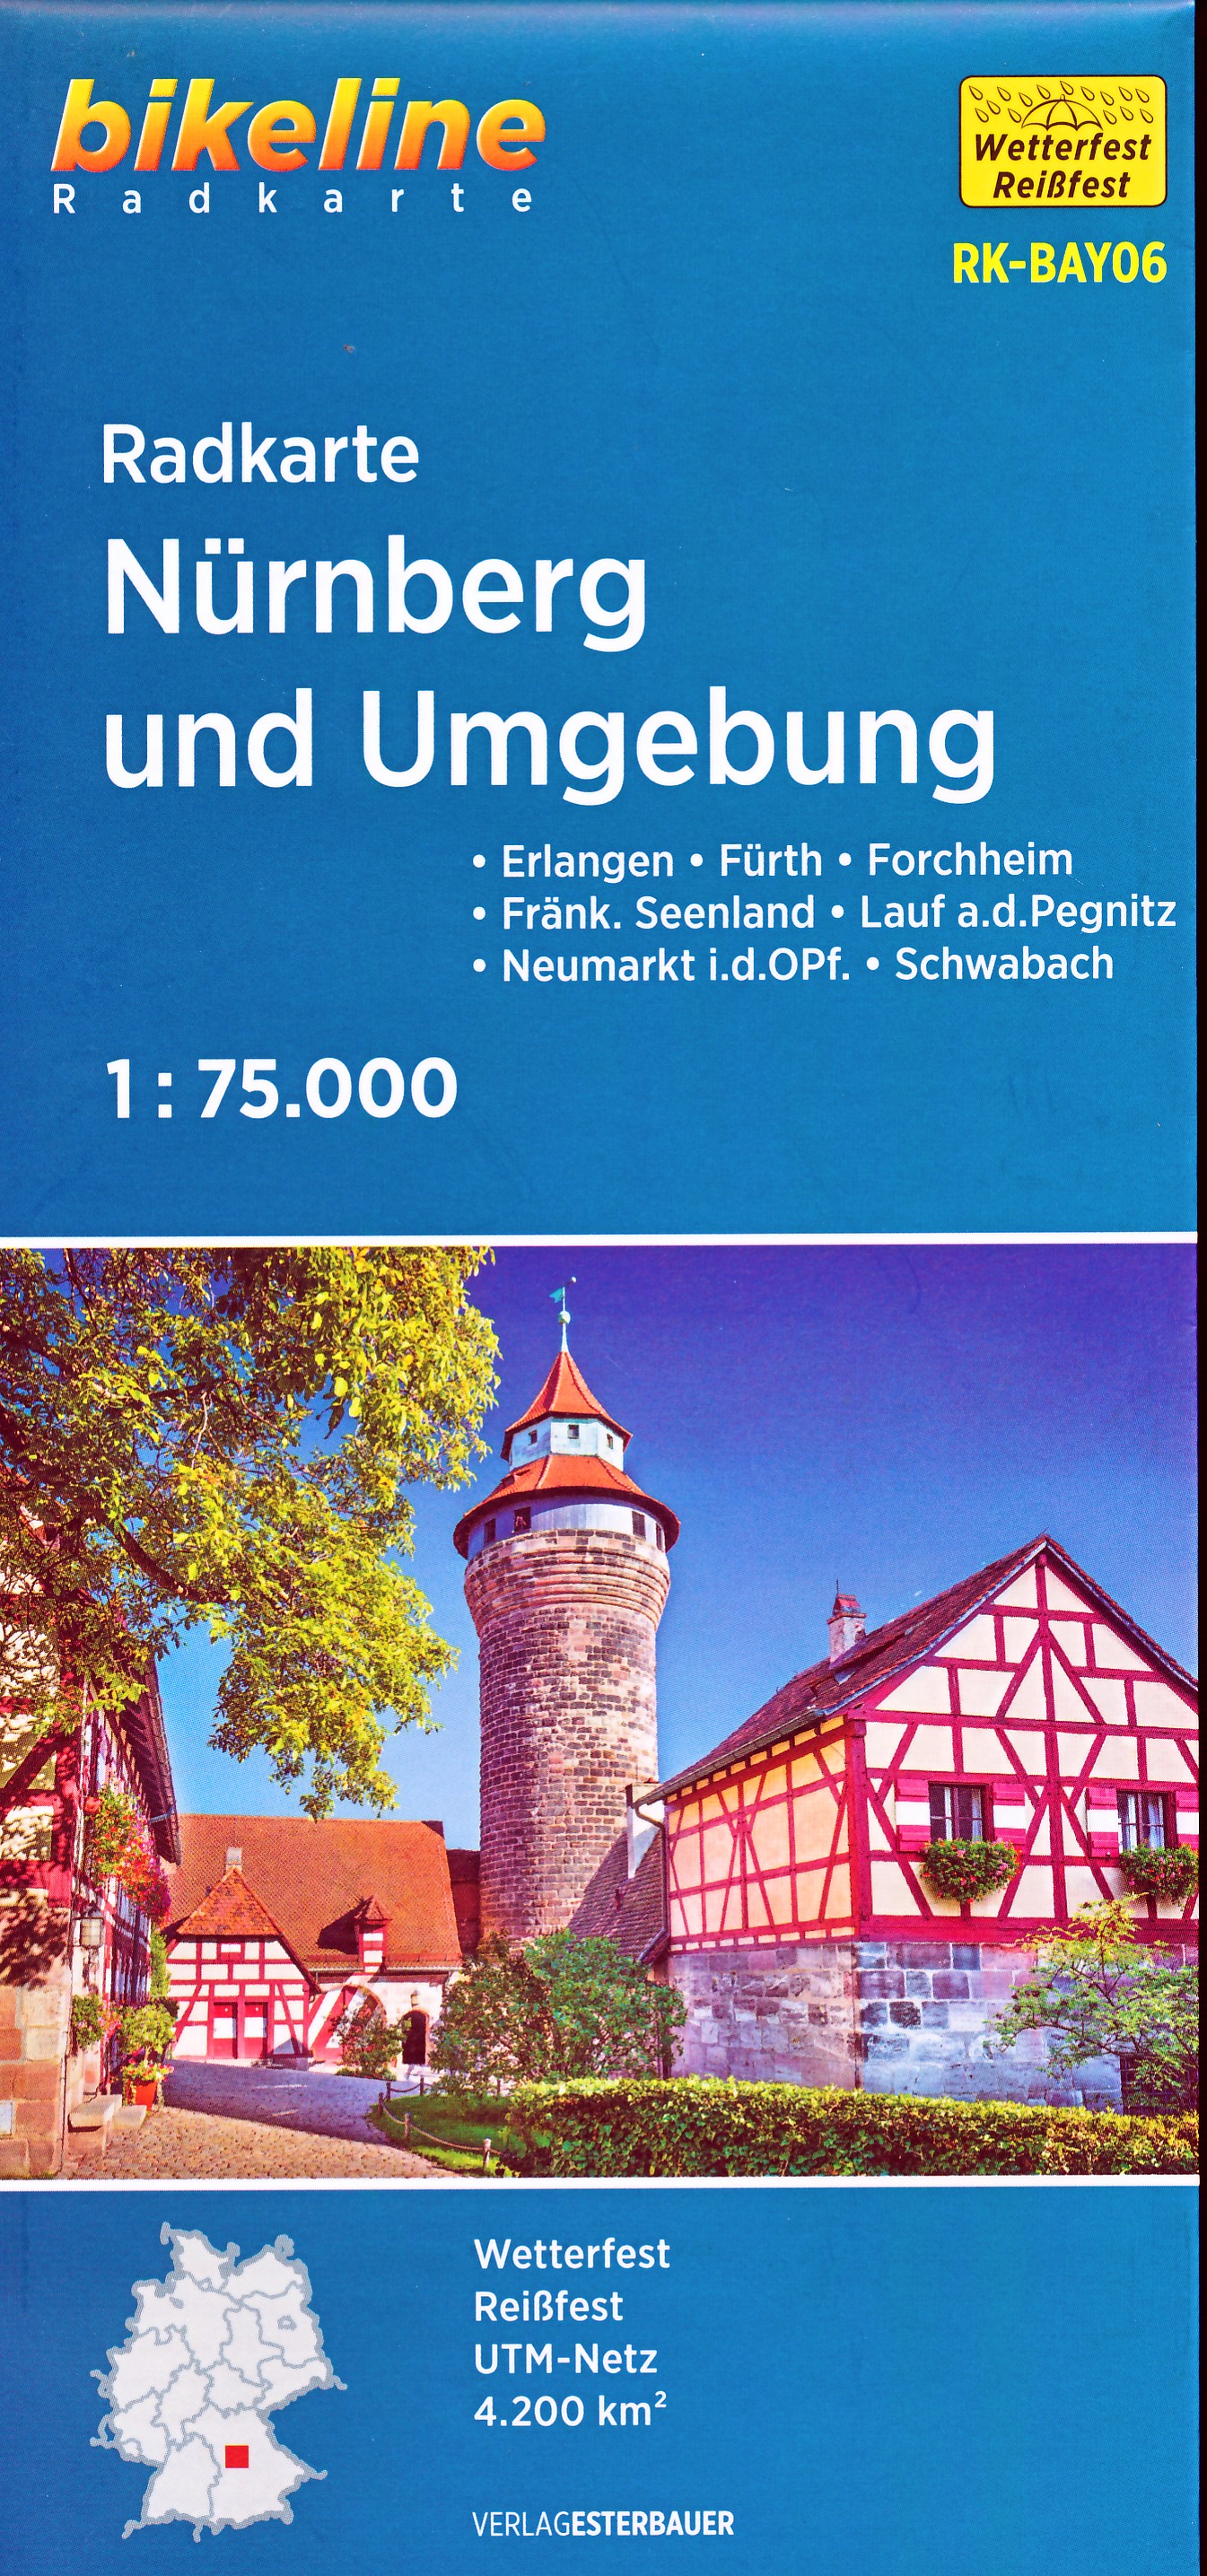 Online bestellen: Fietskaart BAY06 Bikeline Radkarte Nürnberg und Umgebung | Esterbauer